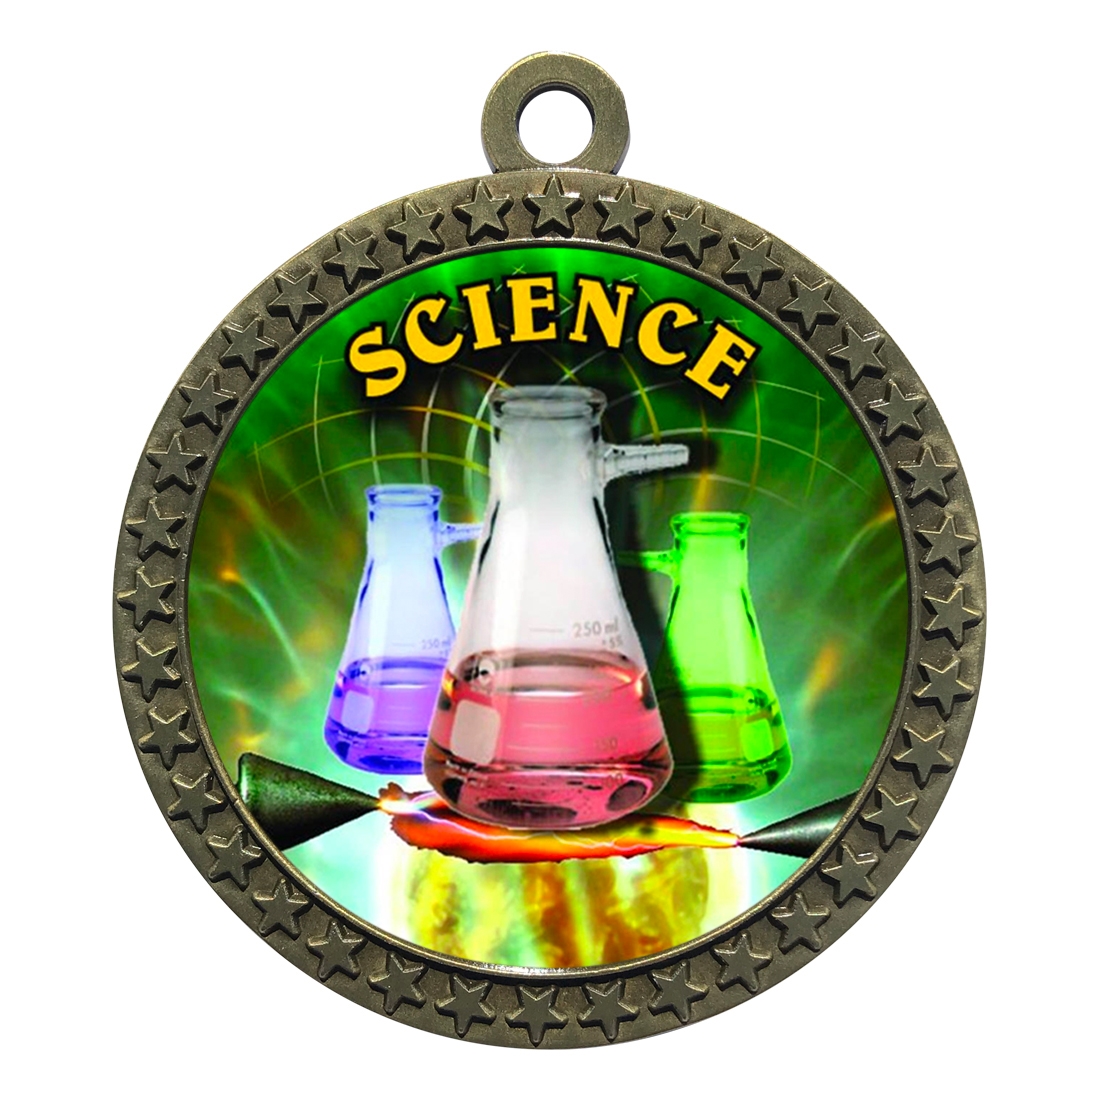 2-1/2" Science Medal